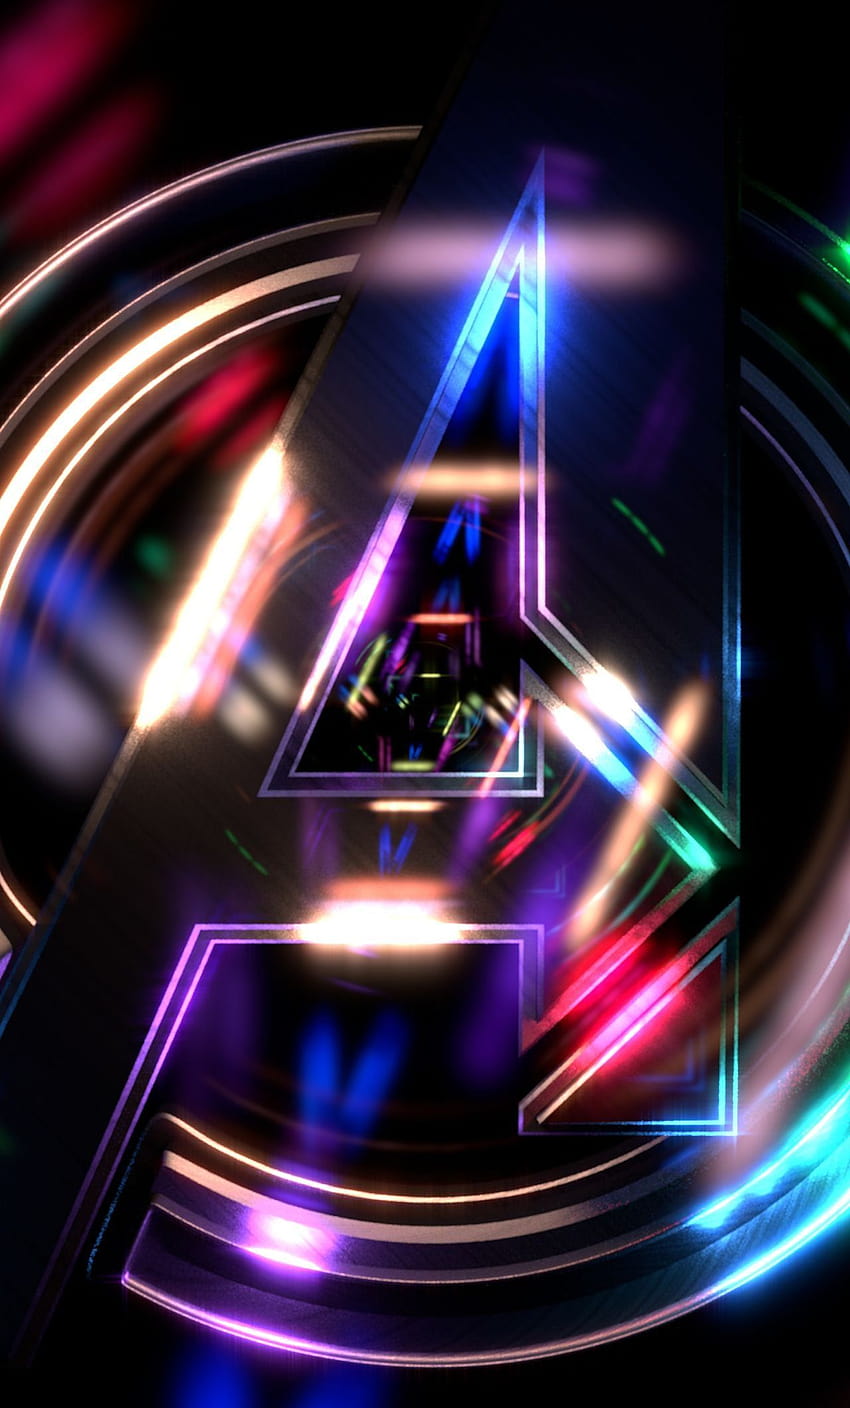 Avengers 4K Ultra HD Wallpapers - Top Những Hình Ảnh Đẹp